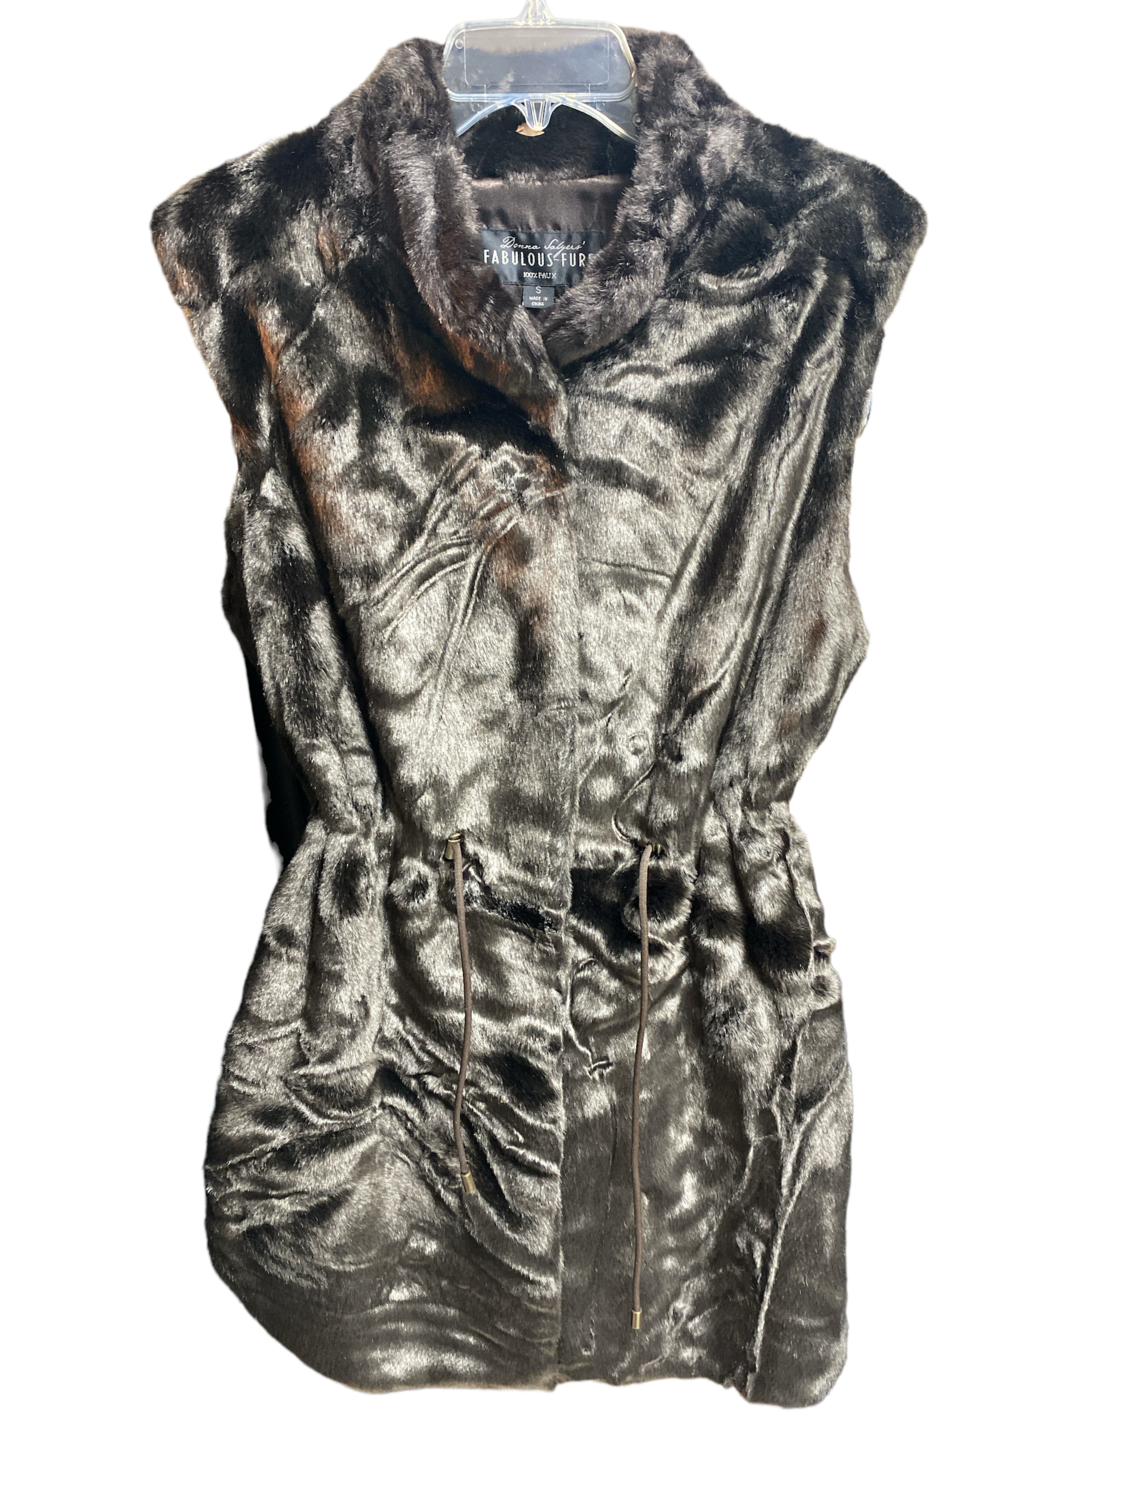 Donna Salyers Fabulous Furs Faux Fur Drawstring Vest szS